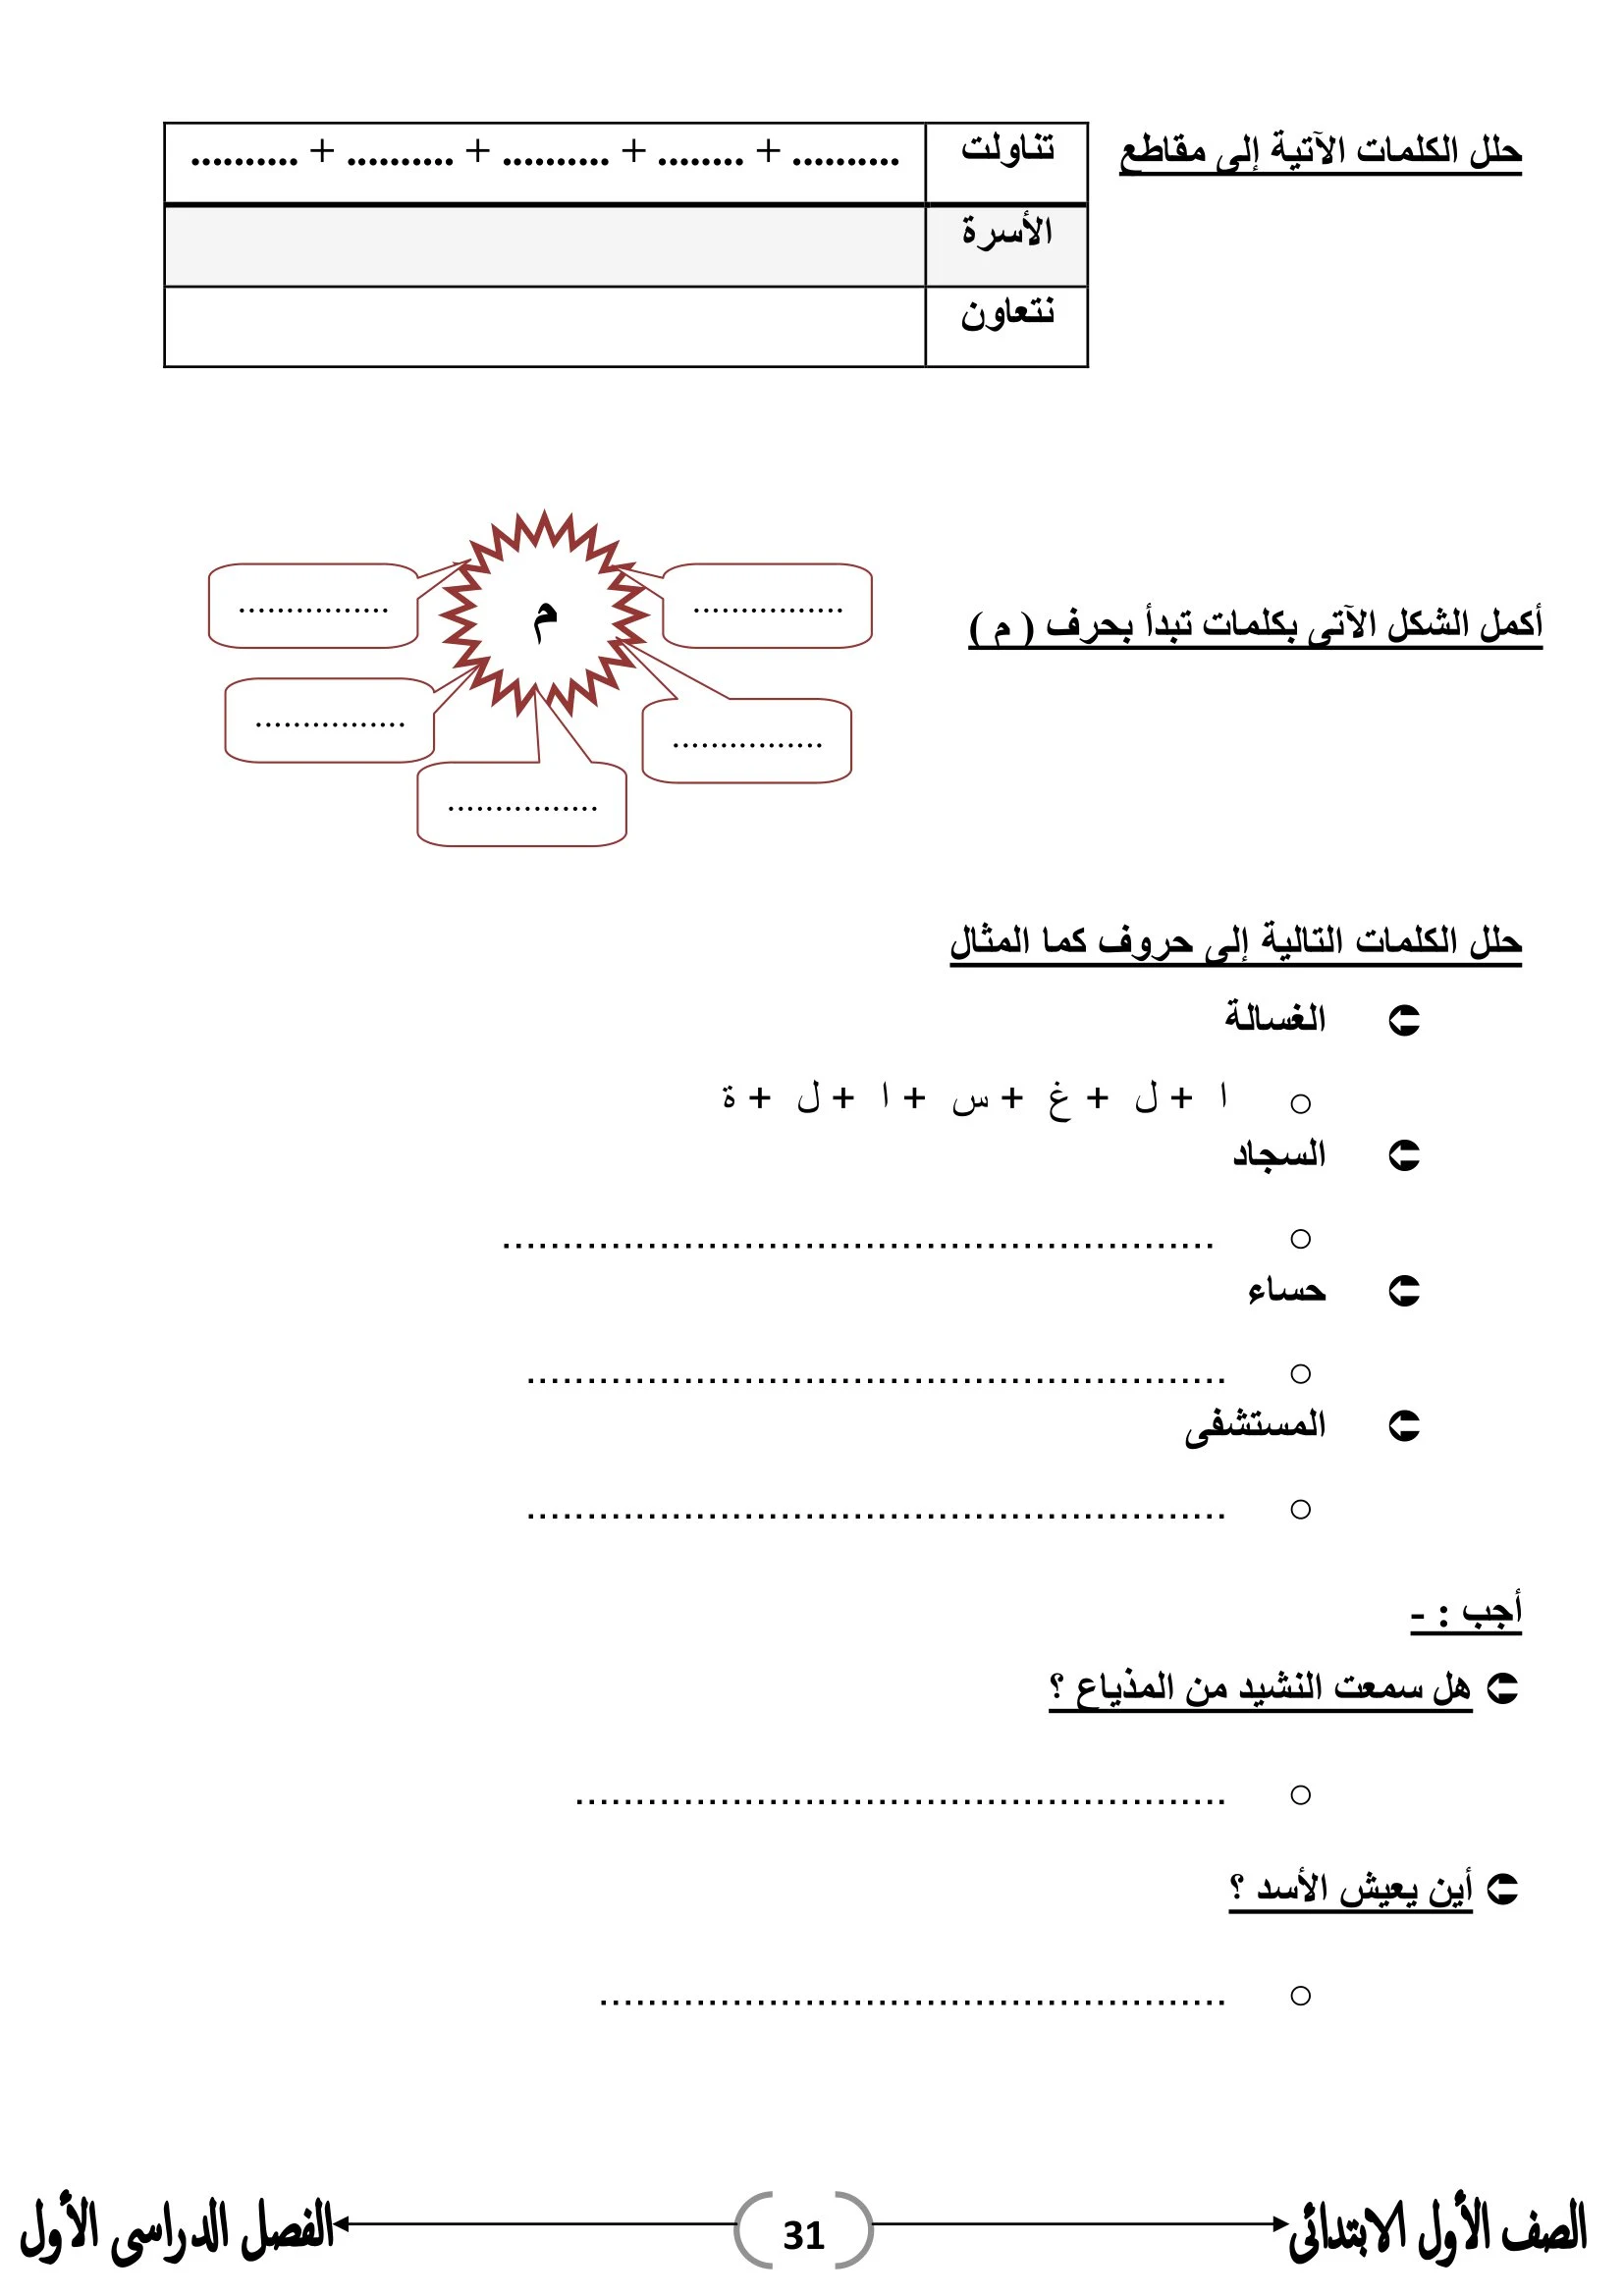 ملزمة تواصل في اللغة العربية للصف الأول الإبتدائي pdf تحميل مباشر مجاني